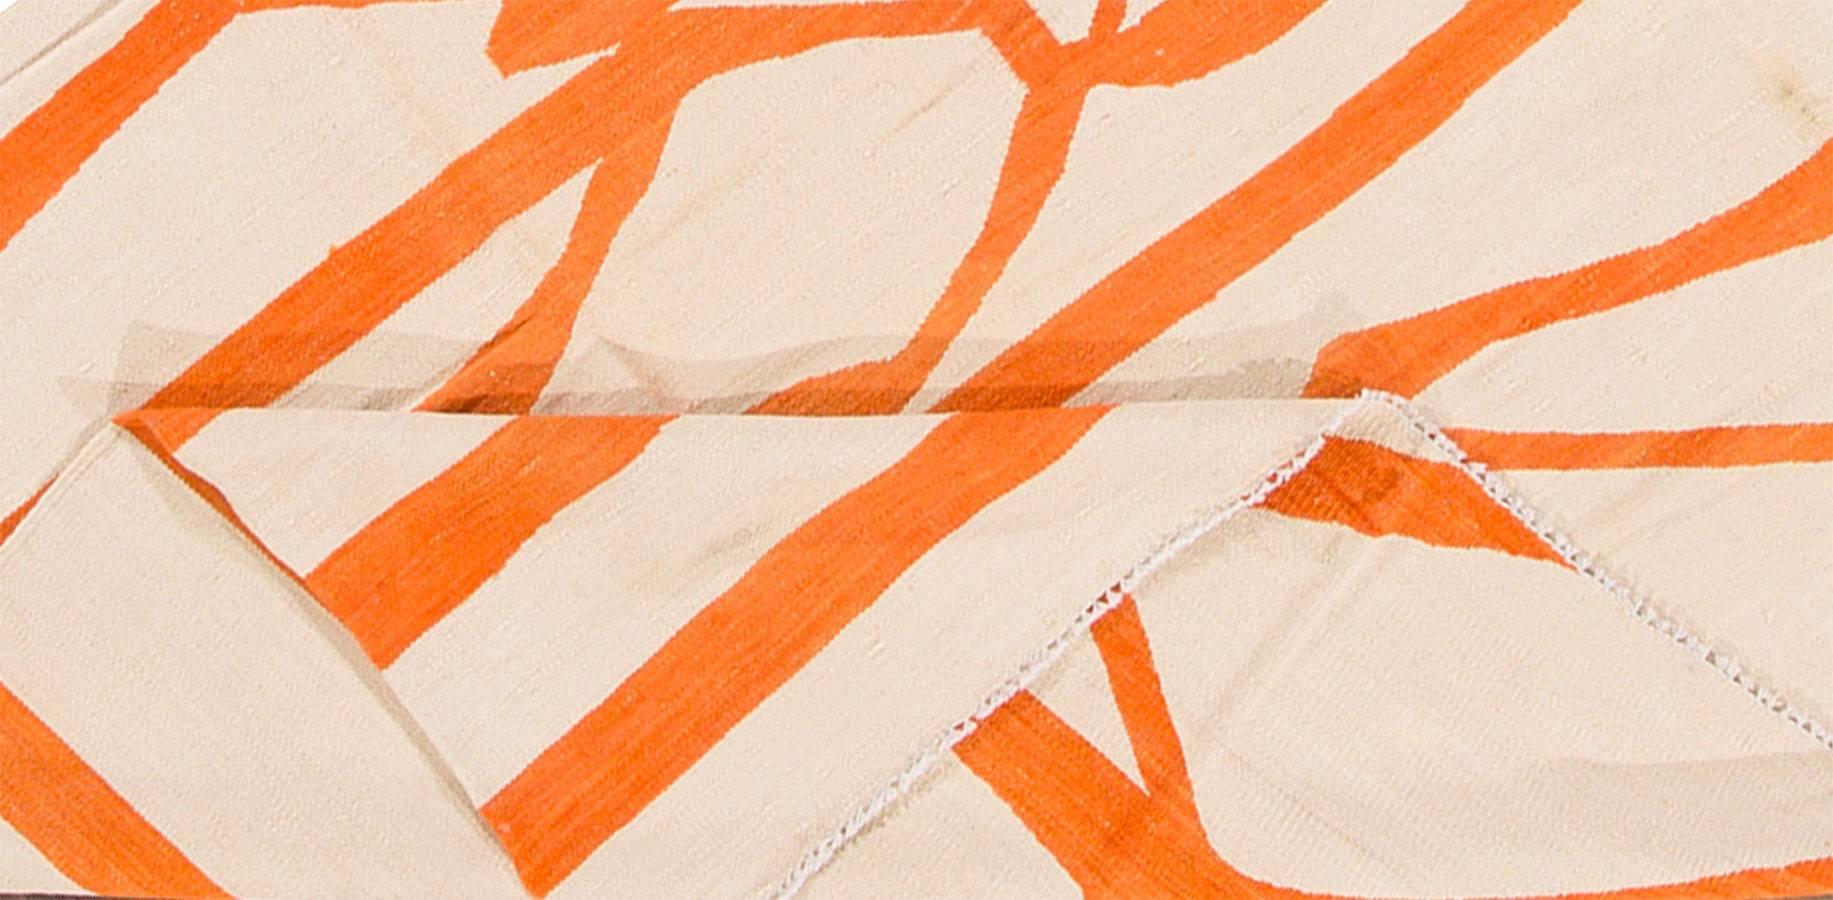 Moderner handgewebter türkischer Kilim-Teppich mit ikonischem und abstraktem orangefarbenem Streifendesign auf einem cremefarbenen Feld. Misst ungefähr 7 Fuß 10 Zoll mal 9 Fuß 8 Zoll.